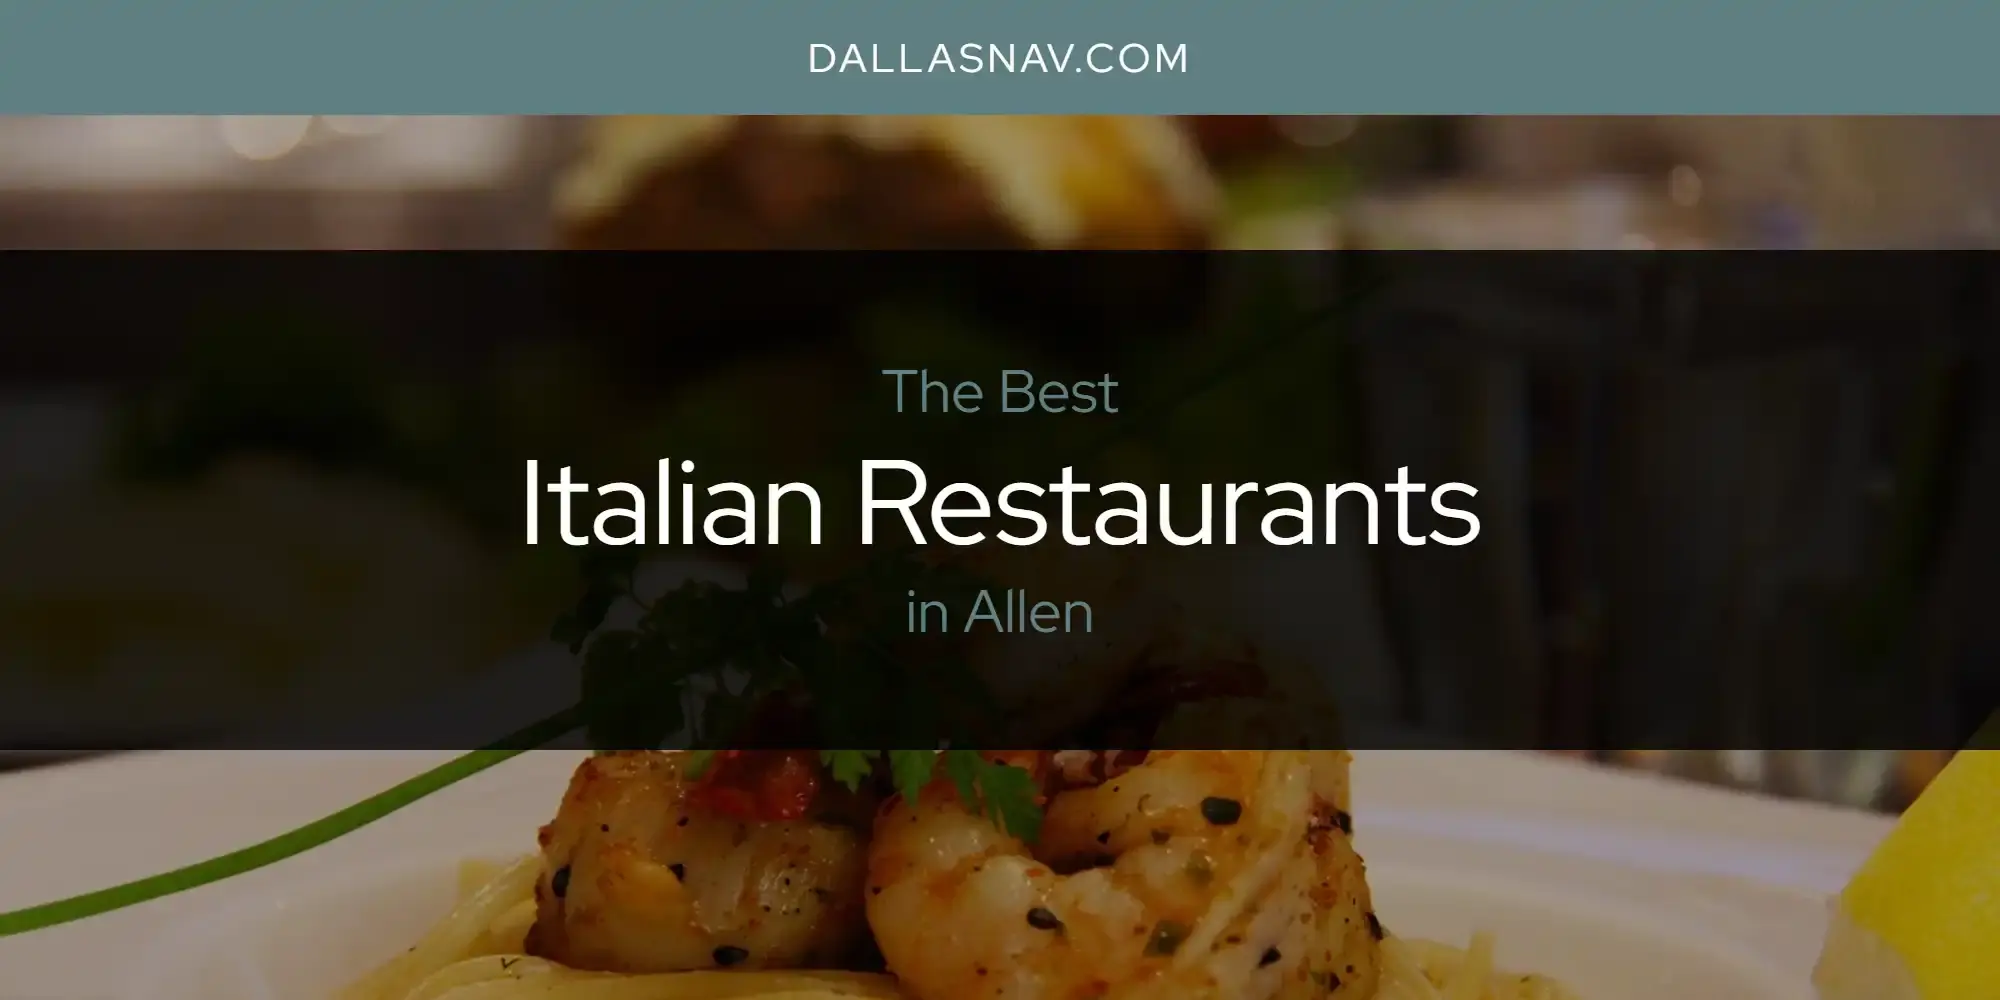 Best Italian Restaurants in Allen? Here's the Top 6